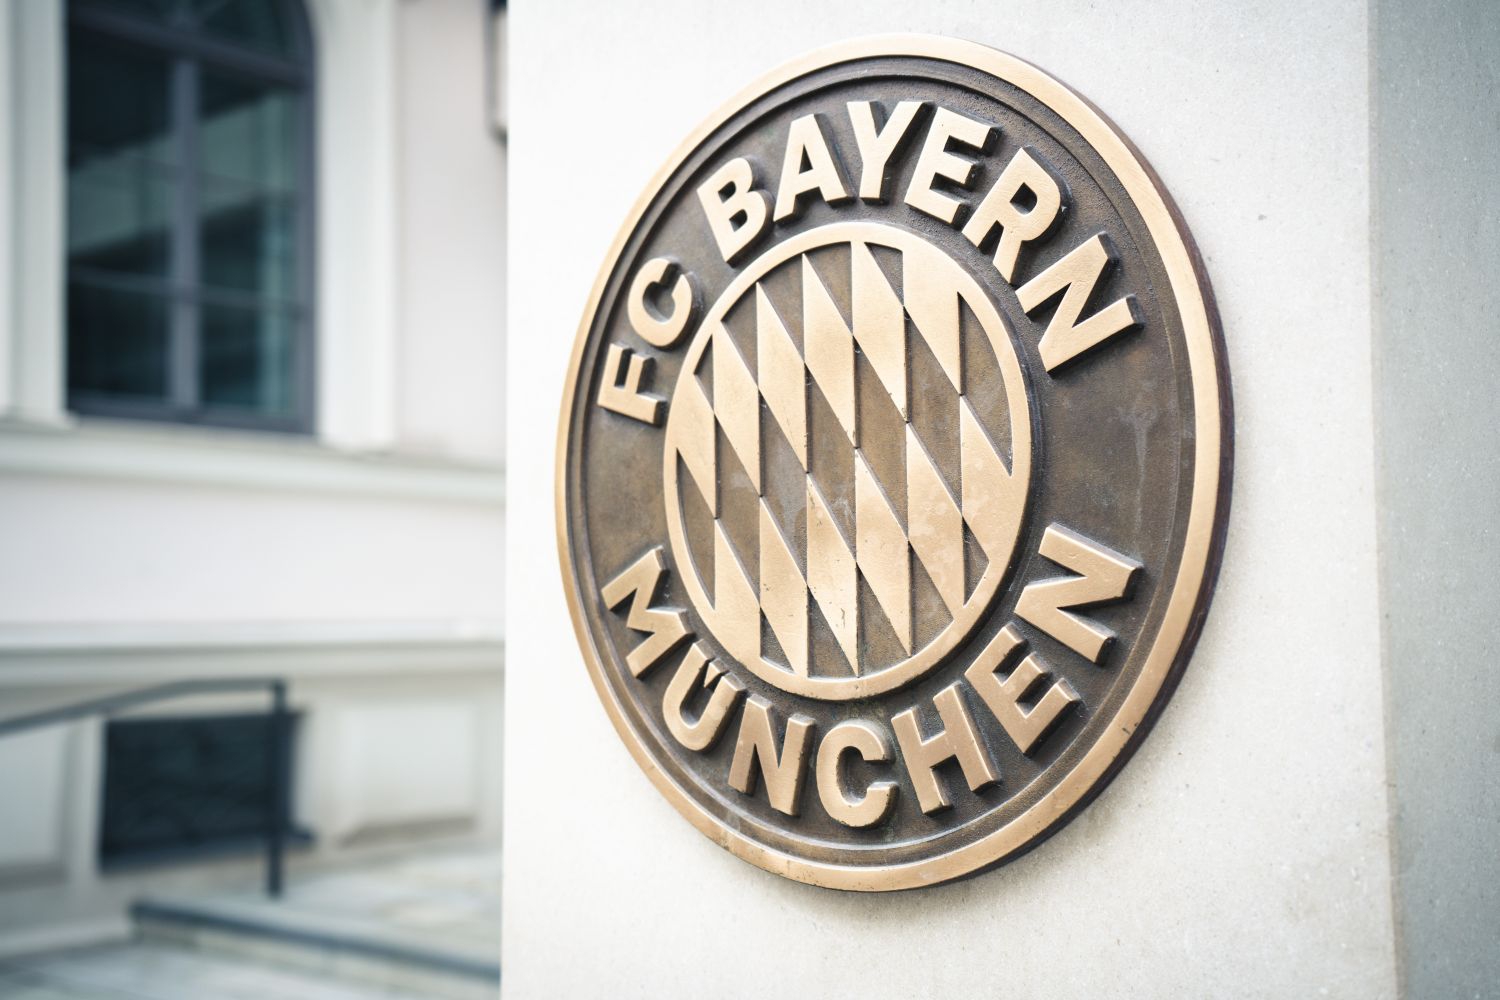 Bayern Monachium ponowi zainteresowanie obrońcą? Jest zdecydowany na zimowy transfer